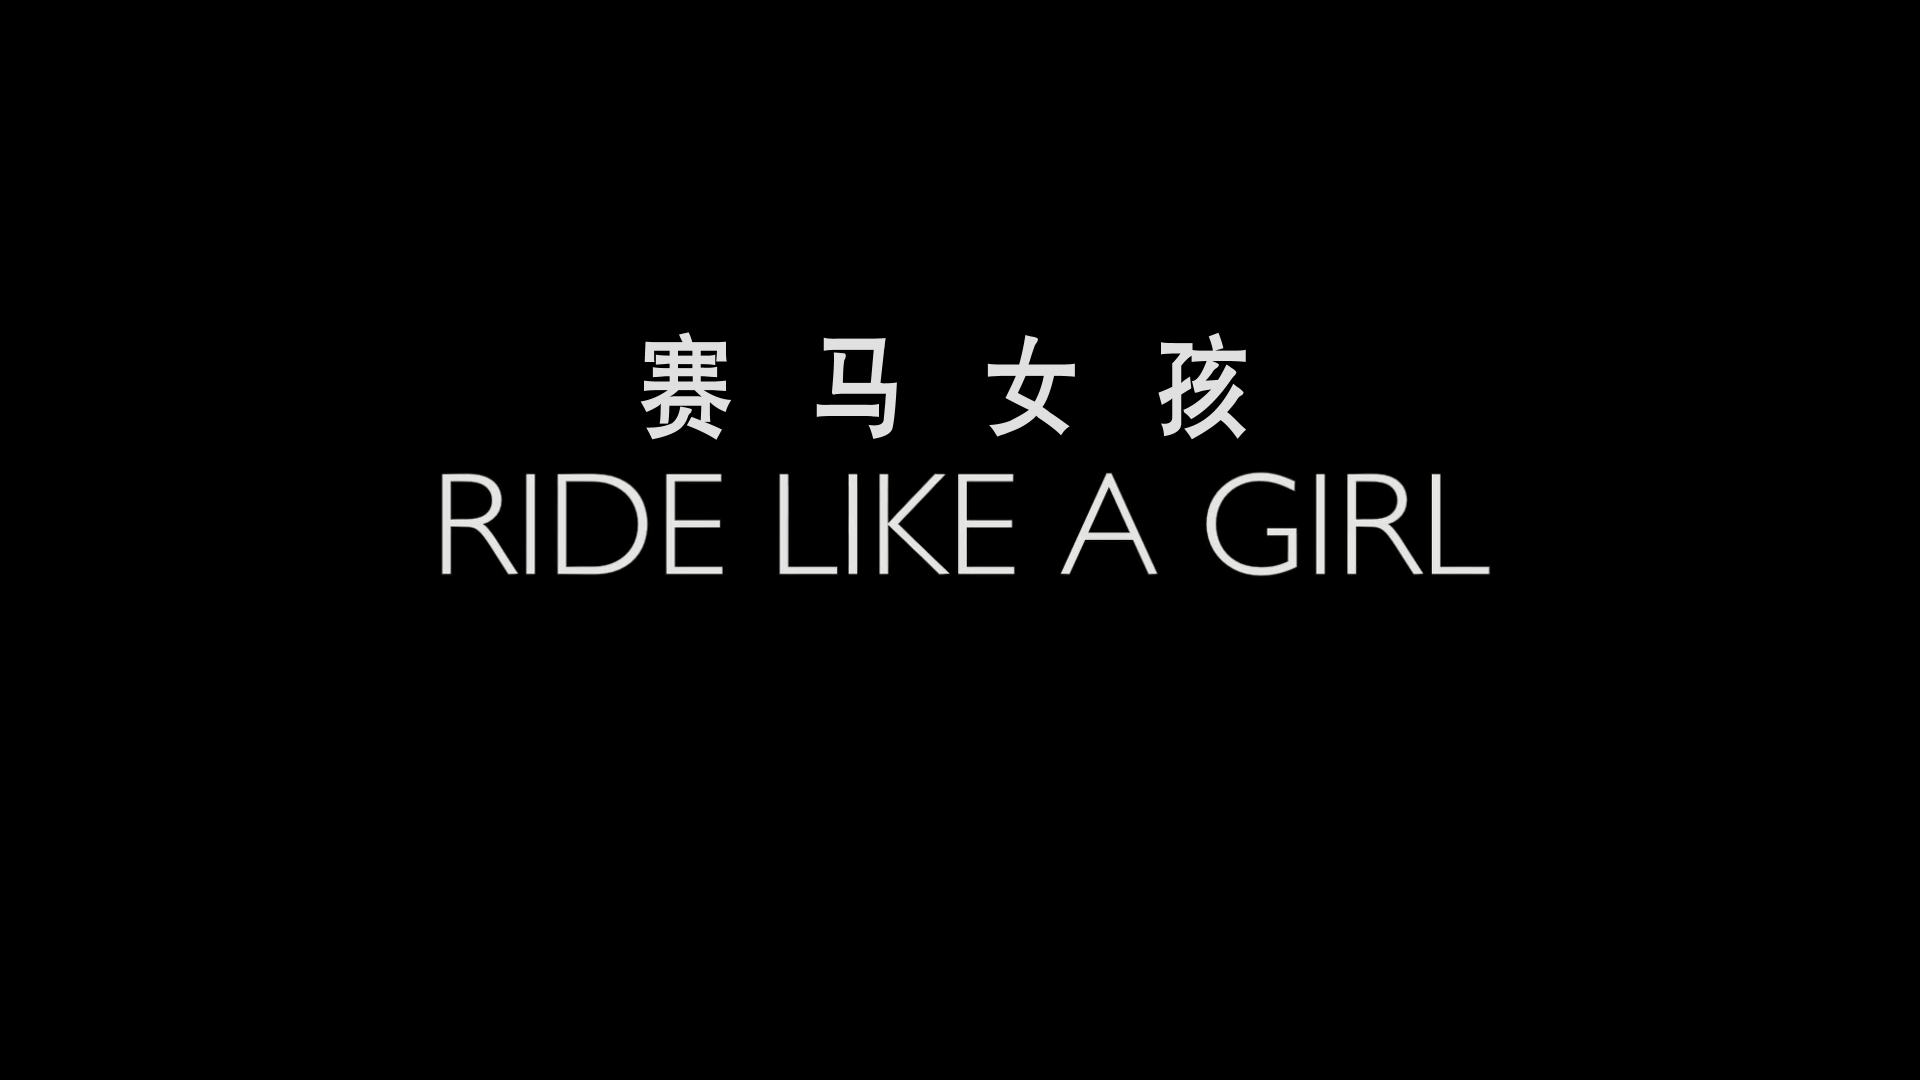 赛马女孩/奔跑吧女孩(台) [DIY简繁/双语字幕] Ride Like a Girl 2019 Blu-ray 1080p AVC DTS-HD MA 5.1-AA@OurBits    [39.86 GB]-2.png